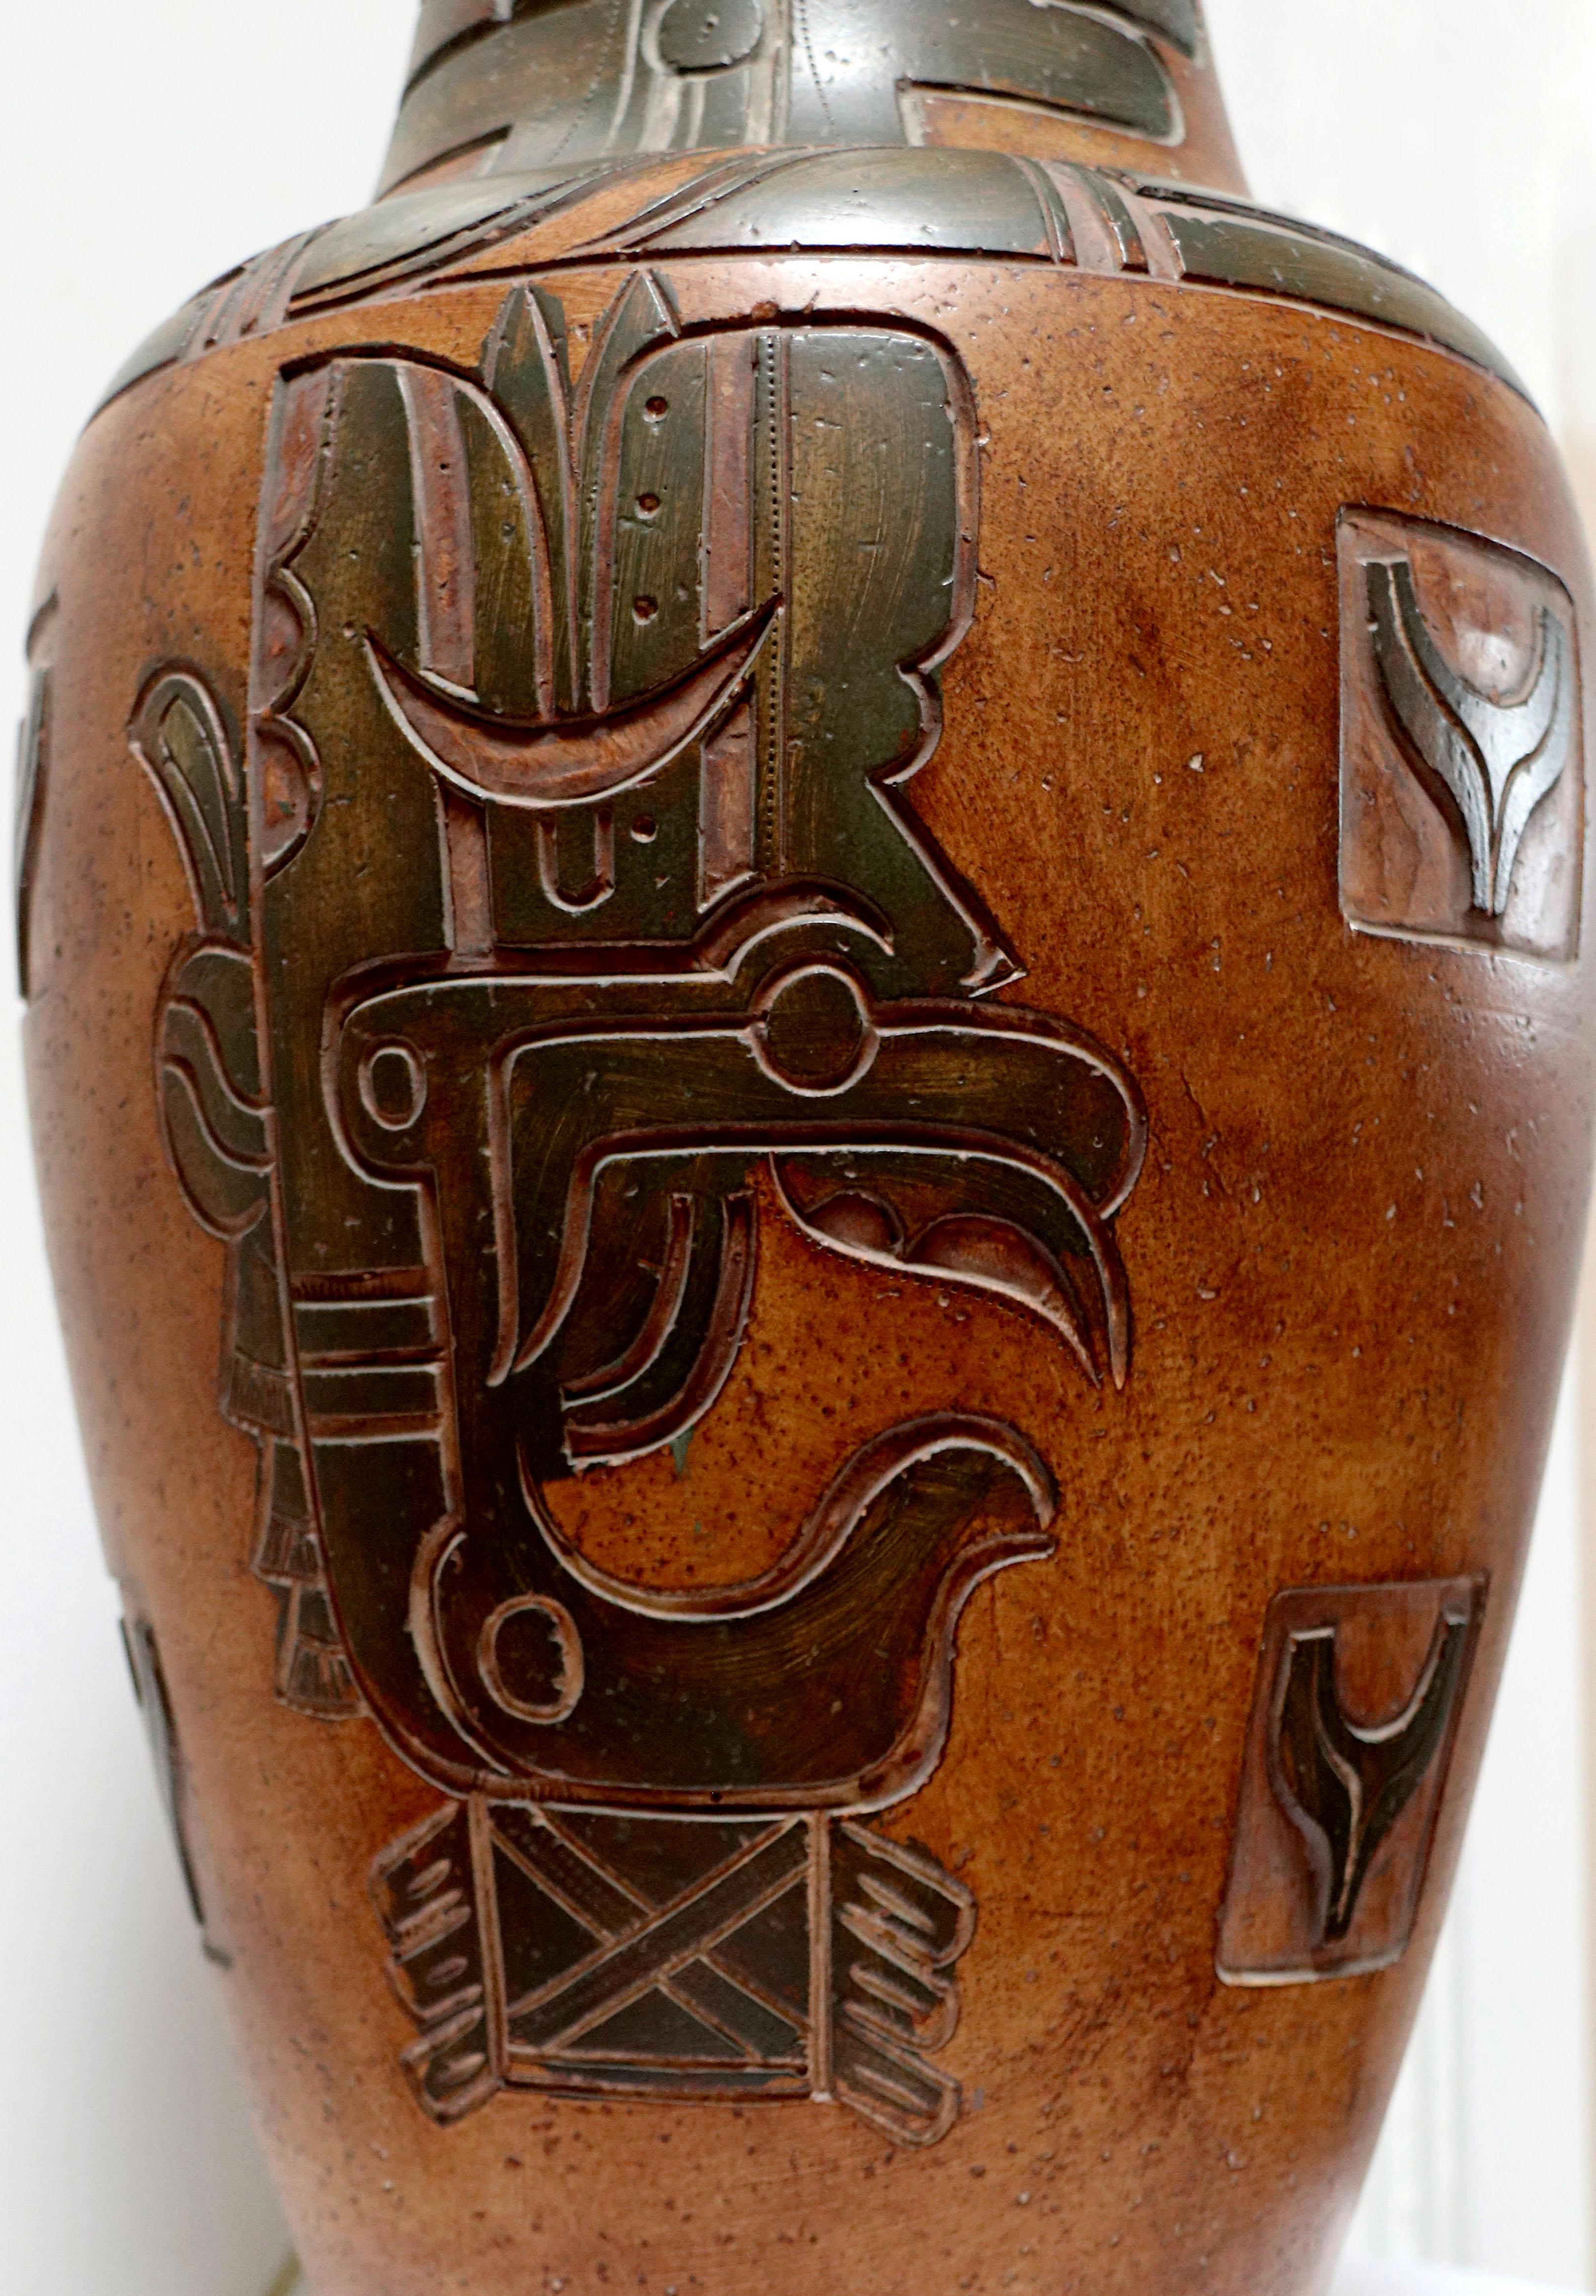 Il s'agit d'une trouvaille rare d'une lampe en poterie de très grande taille.  Cette pièce monumentale se distingue par sa gravure incisée sur le thème des Mayas. Il est précis et élégant, mais il est surtout vintage,  mais encore neufs.
Cette lampe